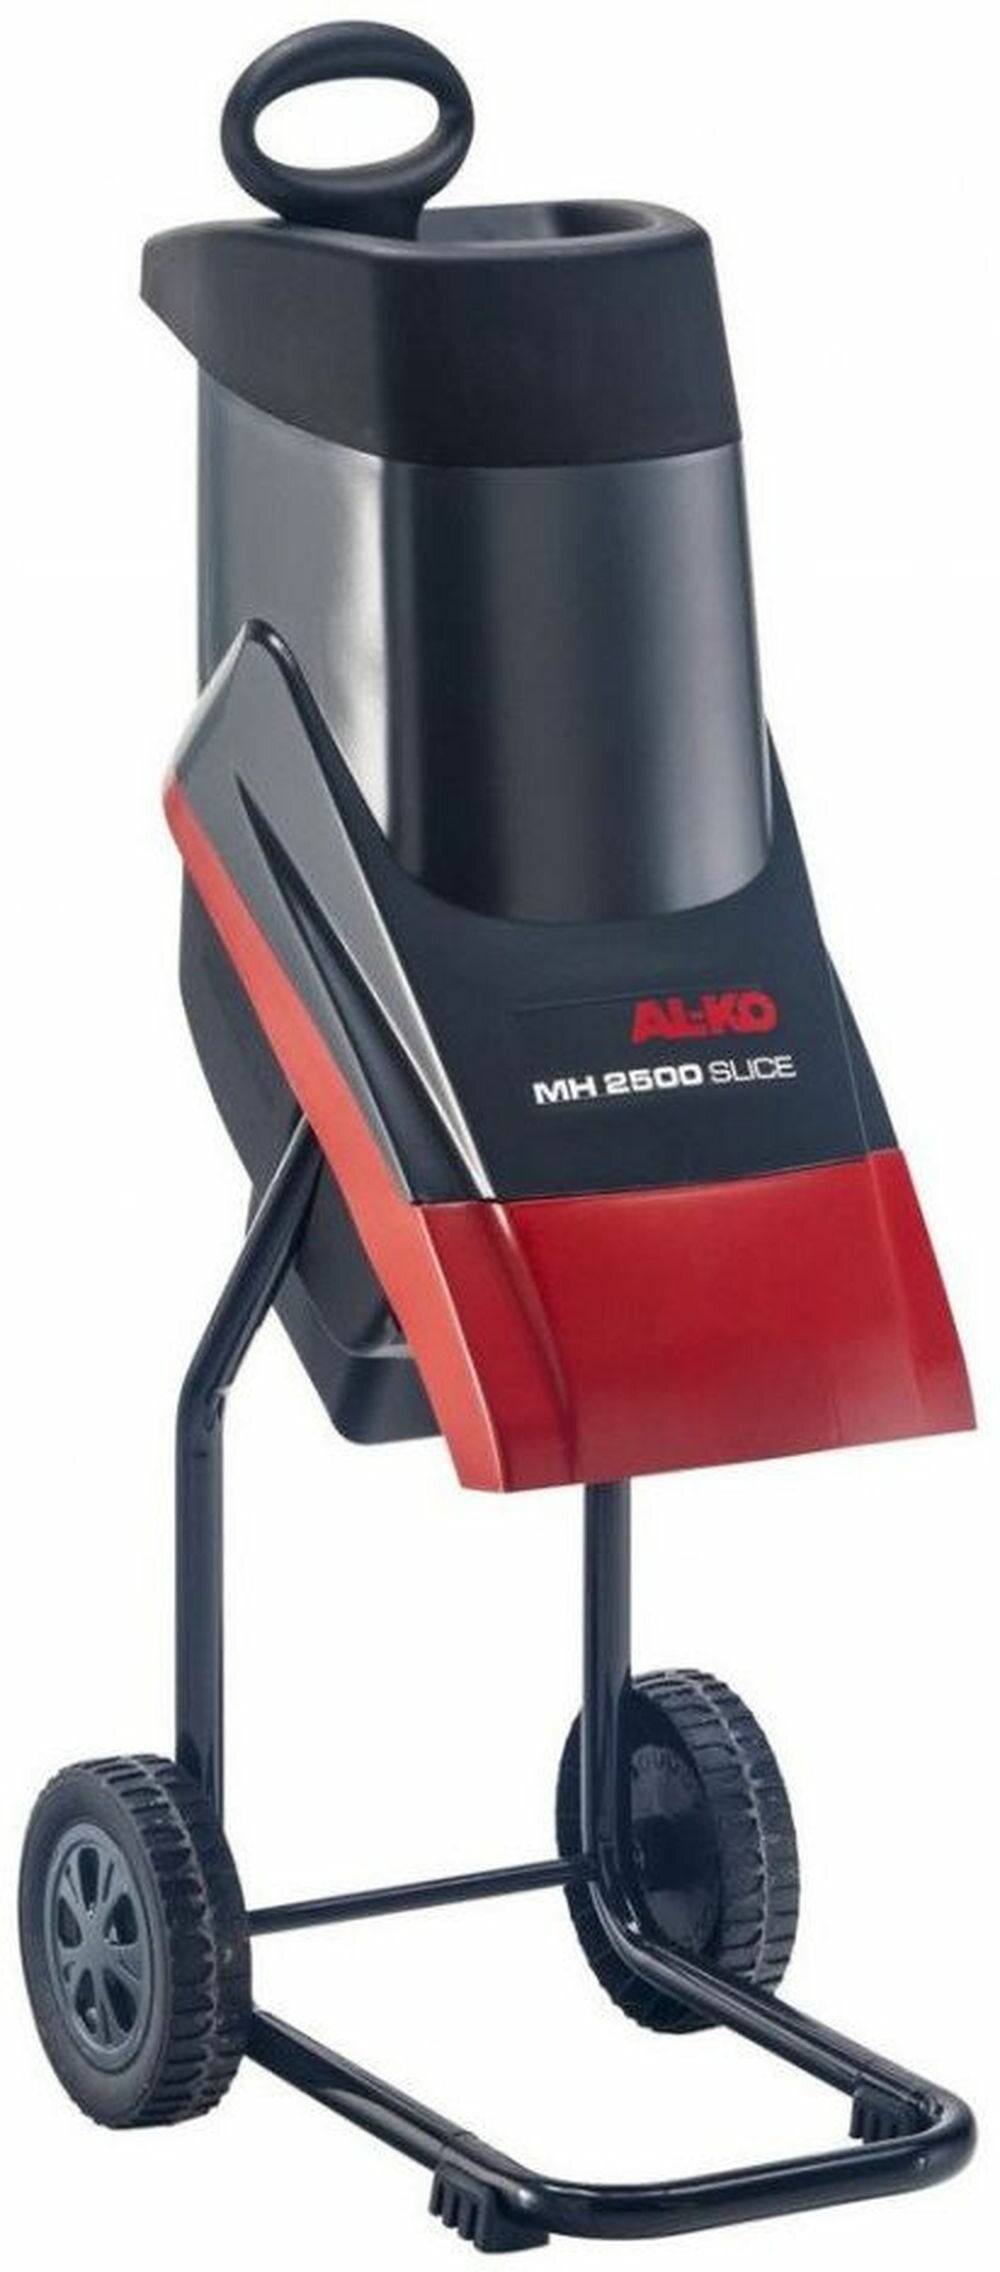 Измельчитель электрический AL-KO Slice MH 2500 2500 Вт